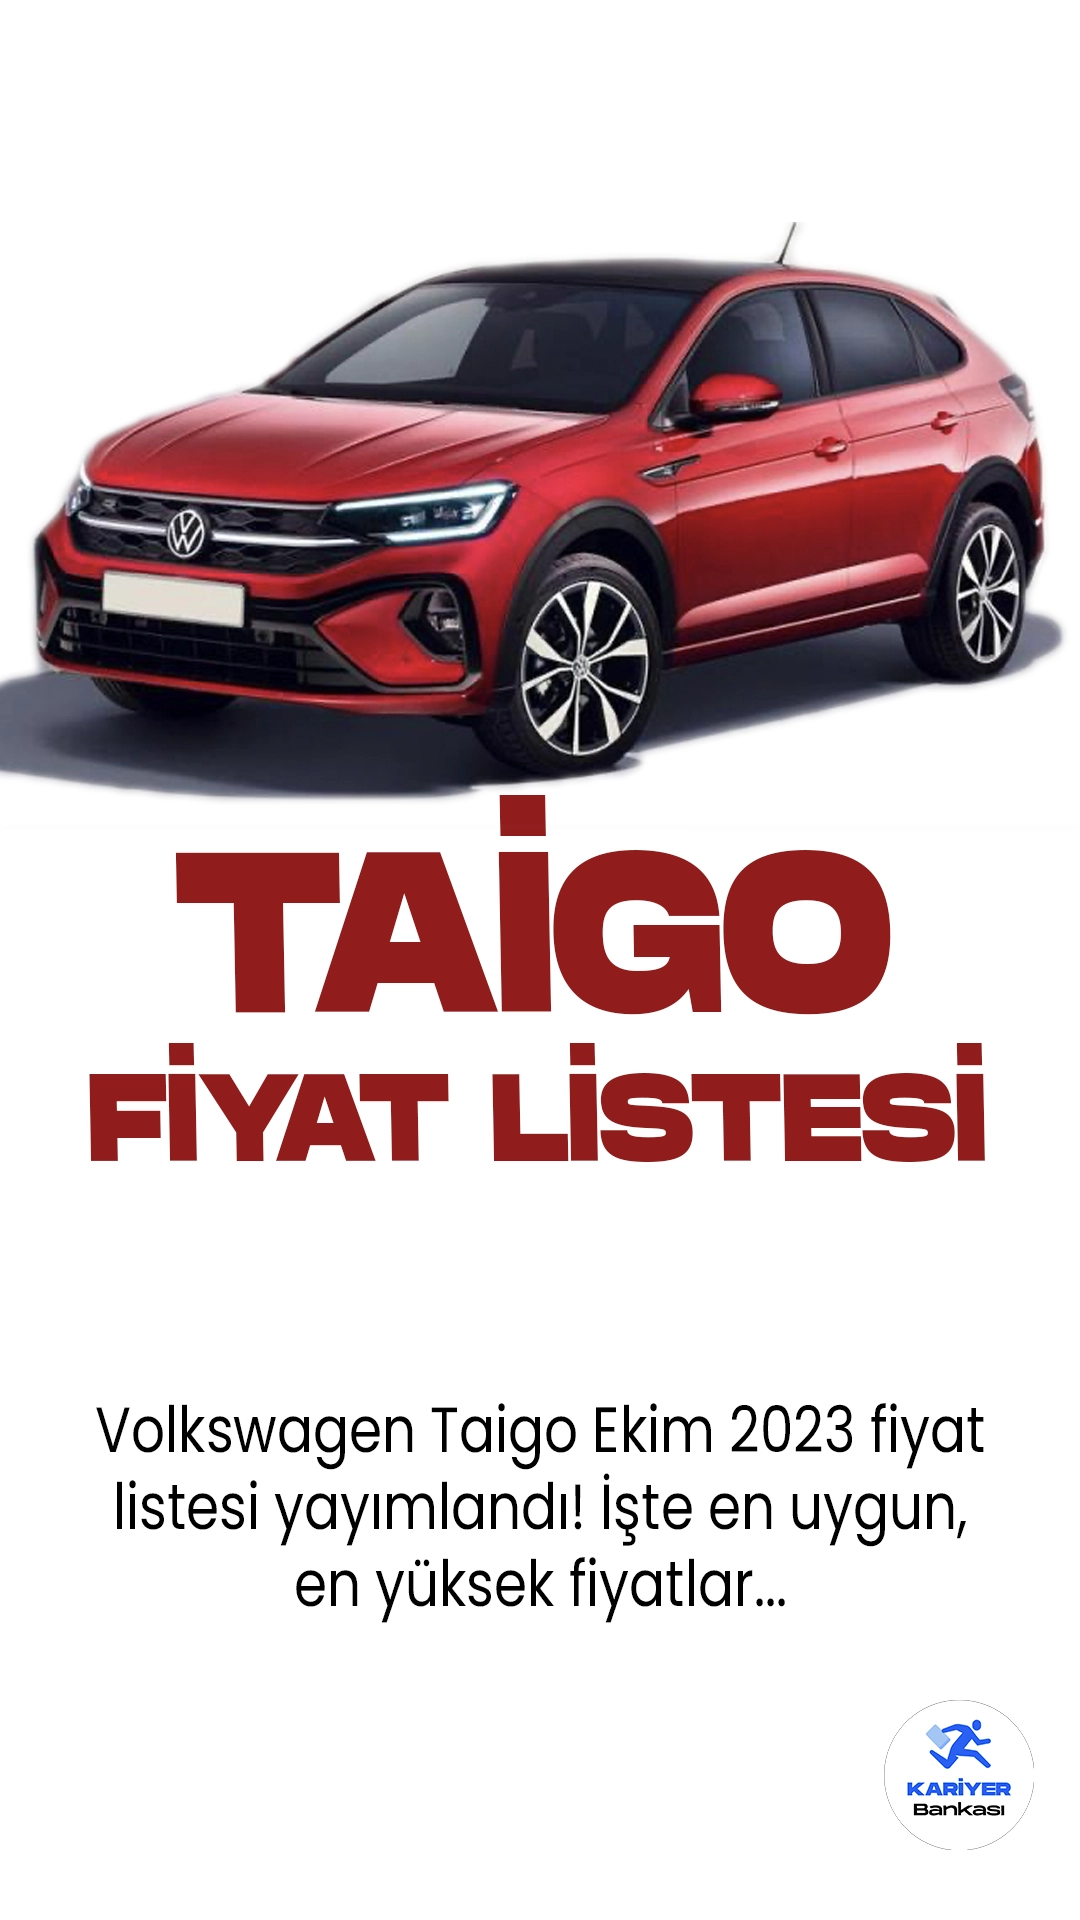 Volkswagen Taigo Ekim 2023 Fiyat Listesi Yayımlandı!Volkswagen, yeni modeli Taigo ile kompakt SUV pazarına iddialı bir giriş yapıyor. Taigo, şık tasarımı, güçlü performansı ve özellik dolu iç mekanıyla dikkat çekiyor. İsmi Brezilya kökenli olan Taigo, aynı coğrafyada üretiliyor ve Güney Amerika'da büyük ilgi görüyor. Türkiye'ye özel versiyonları da sunulacak Taigo, çeşitli motor seçenekleri ve donanım paketleriyle müşterilere farklı seçenekler sunuyor.